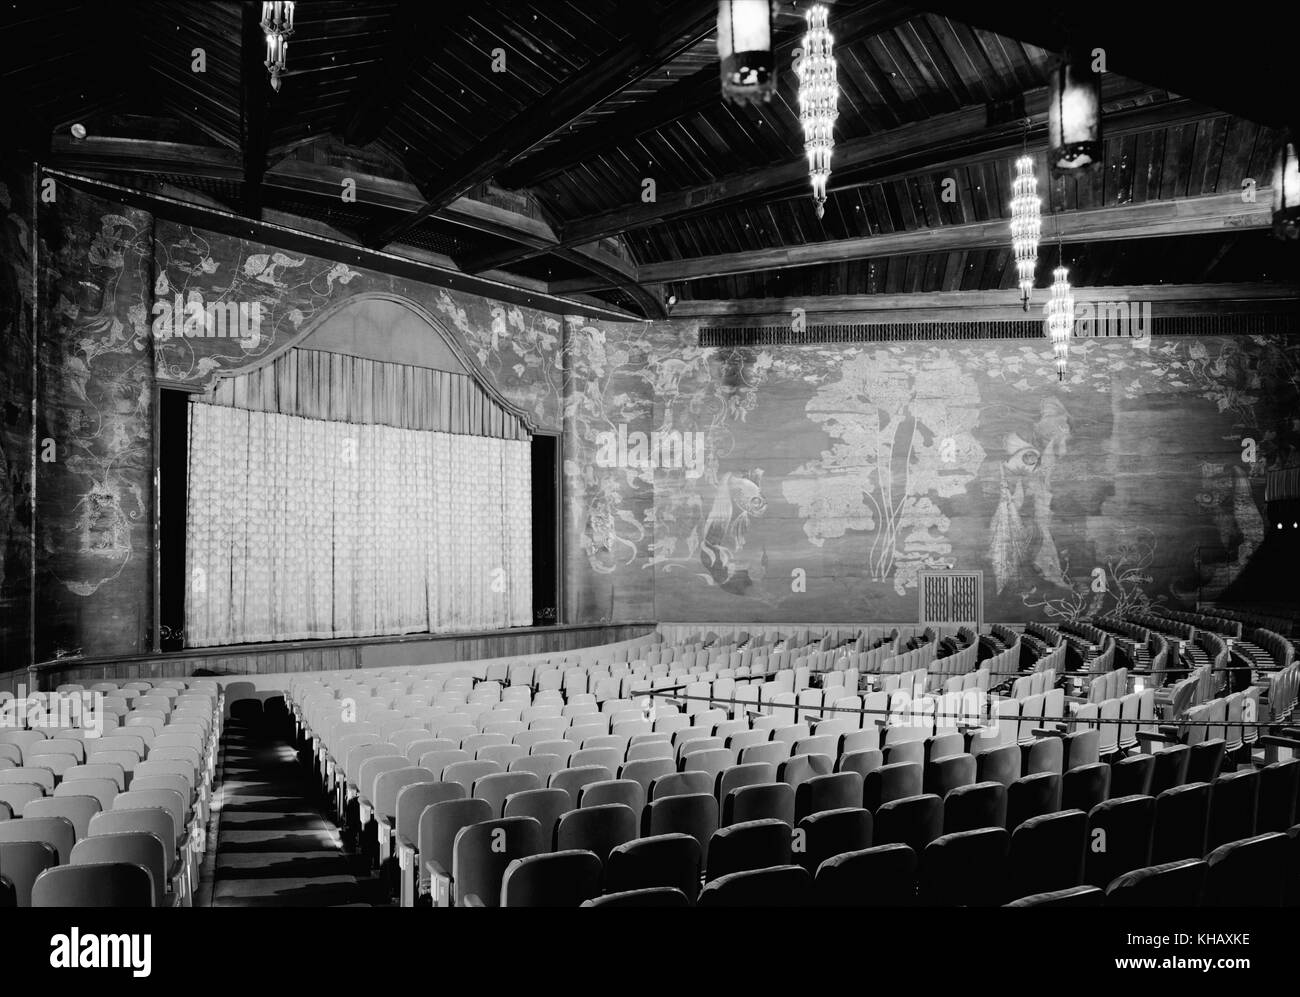 Vue de l'intérieur du théâtre Paramount à Palm Beach, en Floride. Le film historique palace a été construit en 1926 et conçu dans le quartier maure et Revival style colonial revival espagnol par Joseph urbaines aussi un film muet théâtre juste avant l'avènement de 'parlant'. (Photo c1972) Banque D'Images